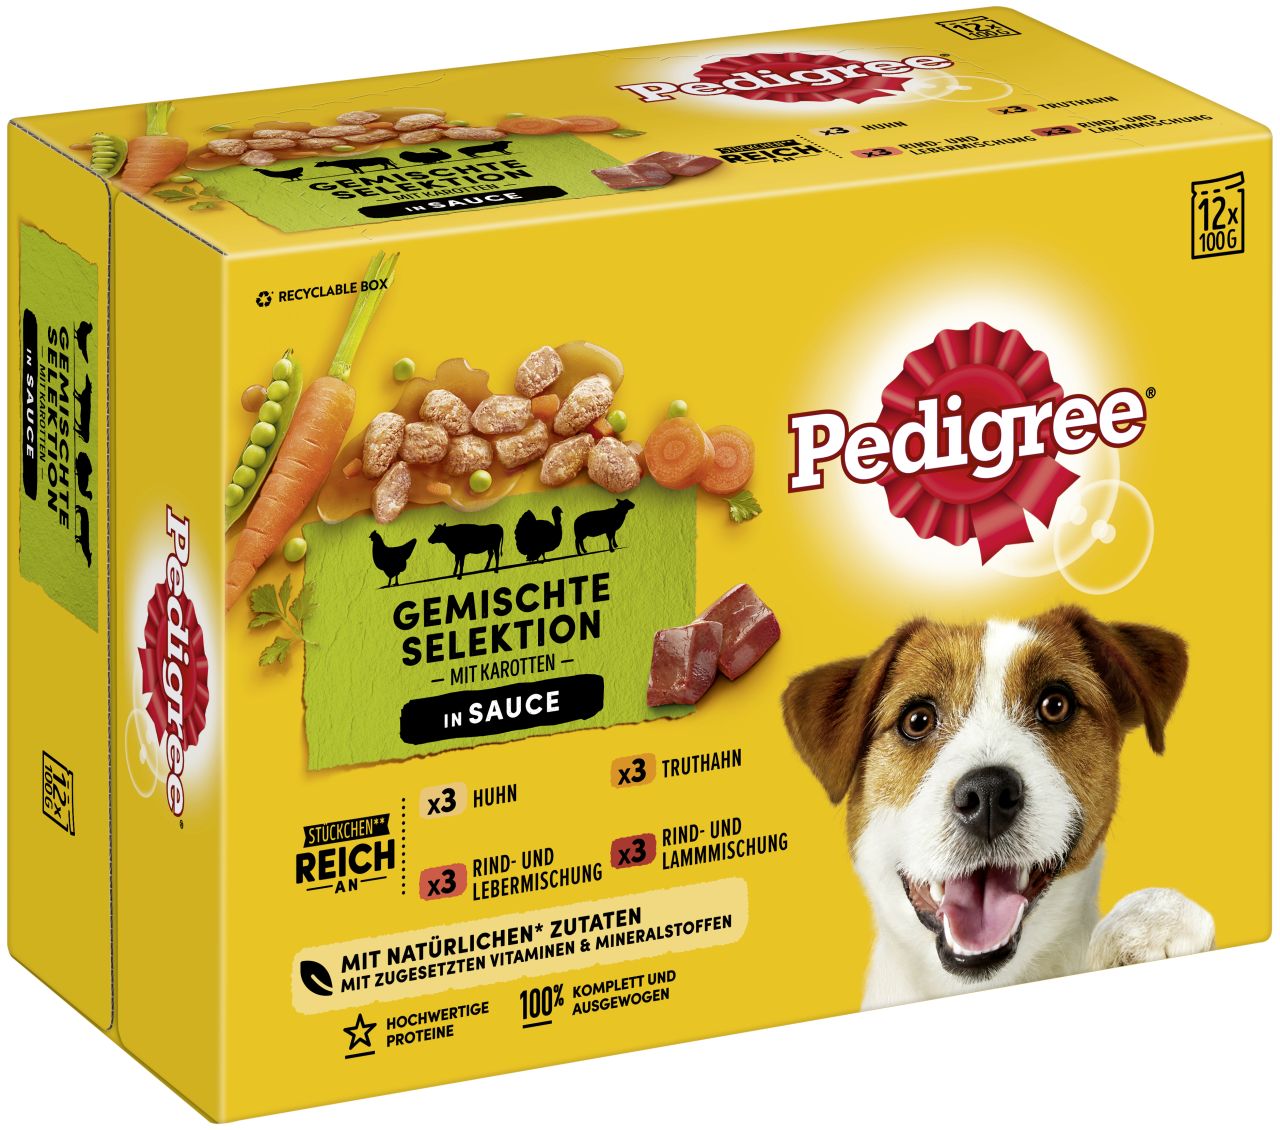 Pedigree Adult Gemischte Selektion mit Gemüse & Sauce 4 Varietäten Hundefutter 12 x 100g GLO629307112